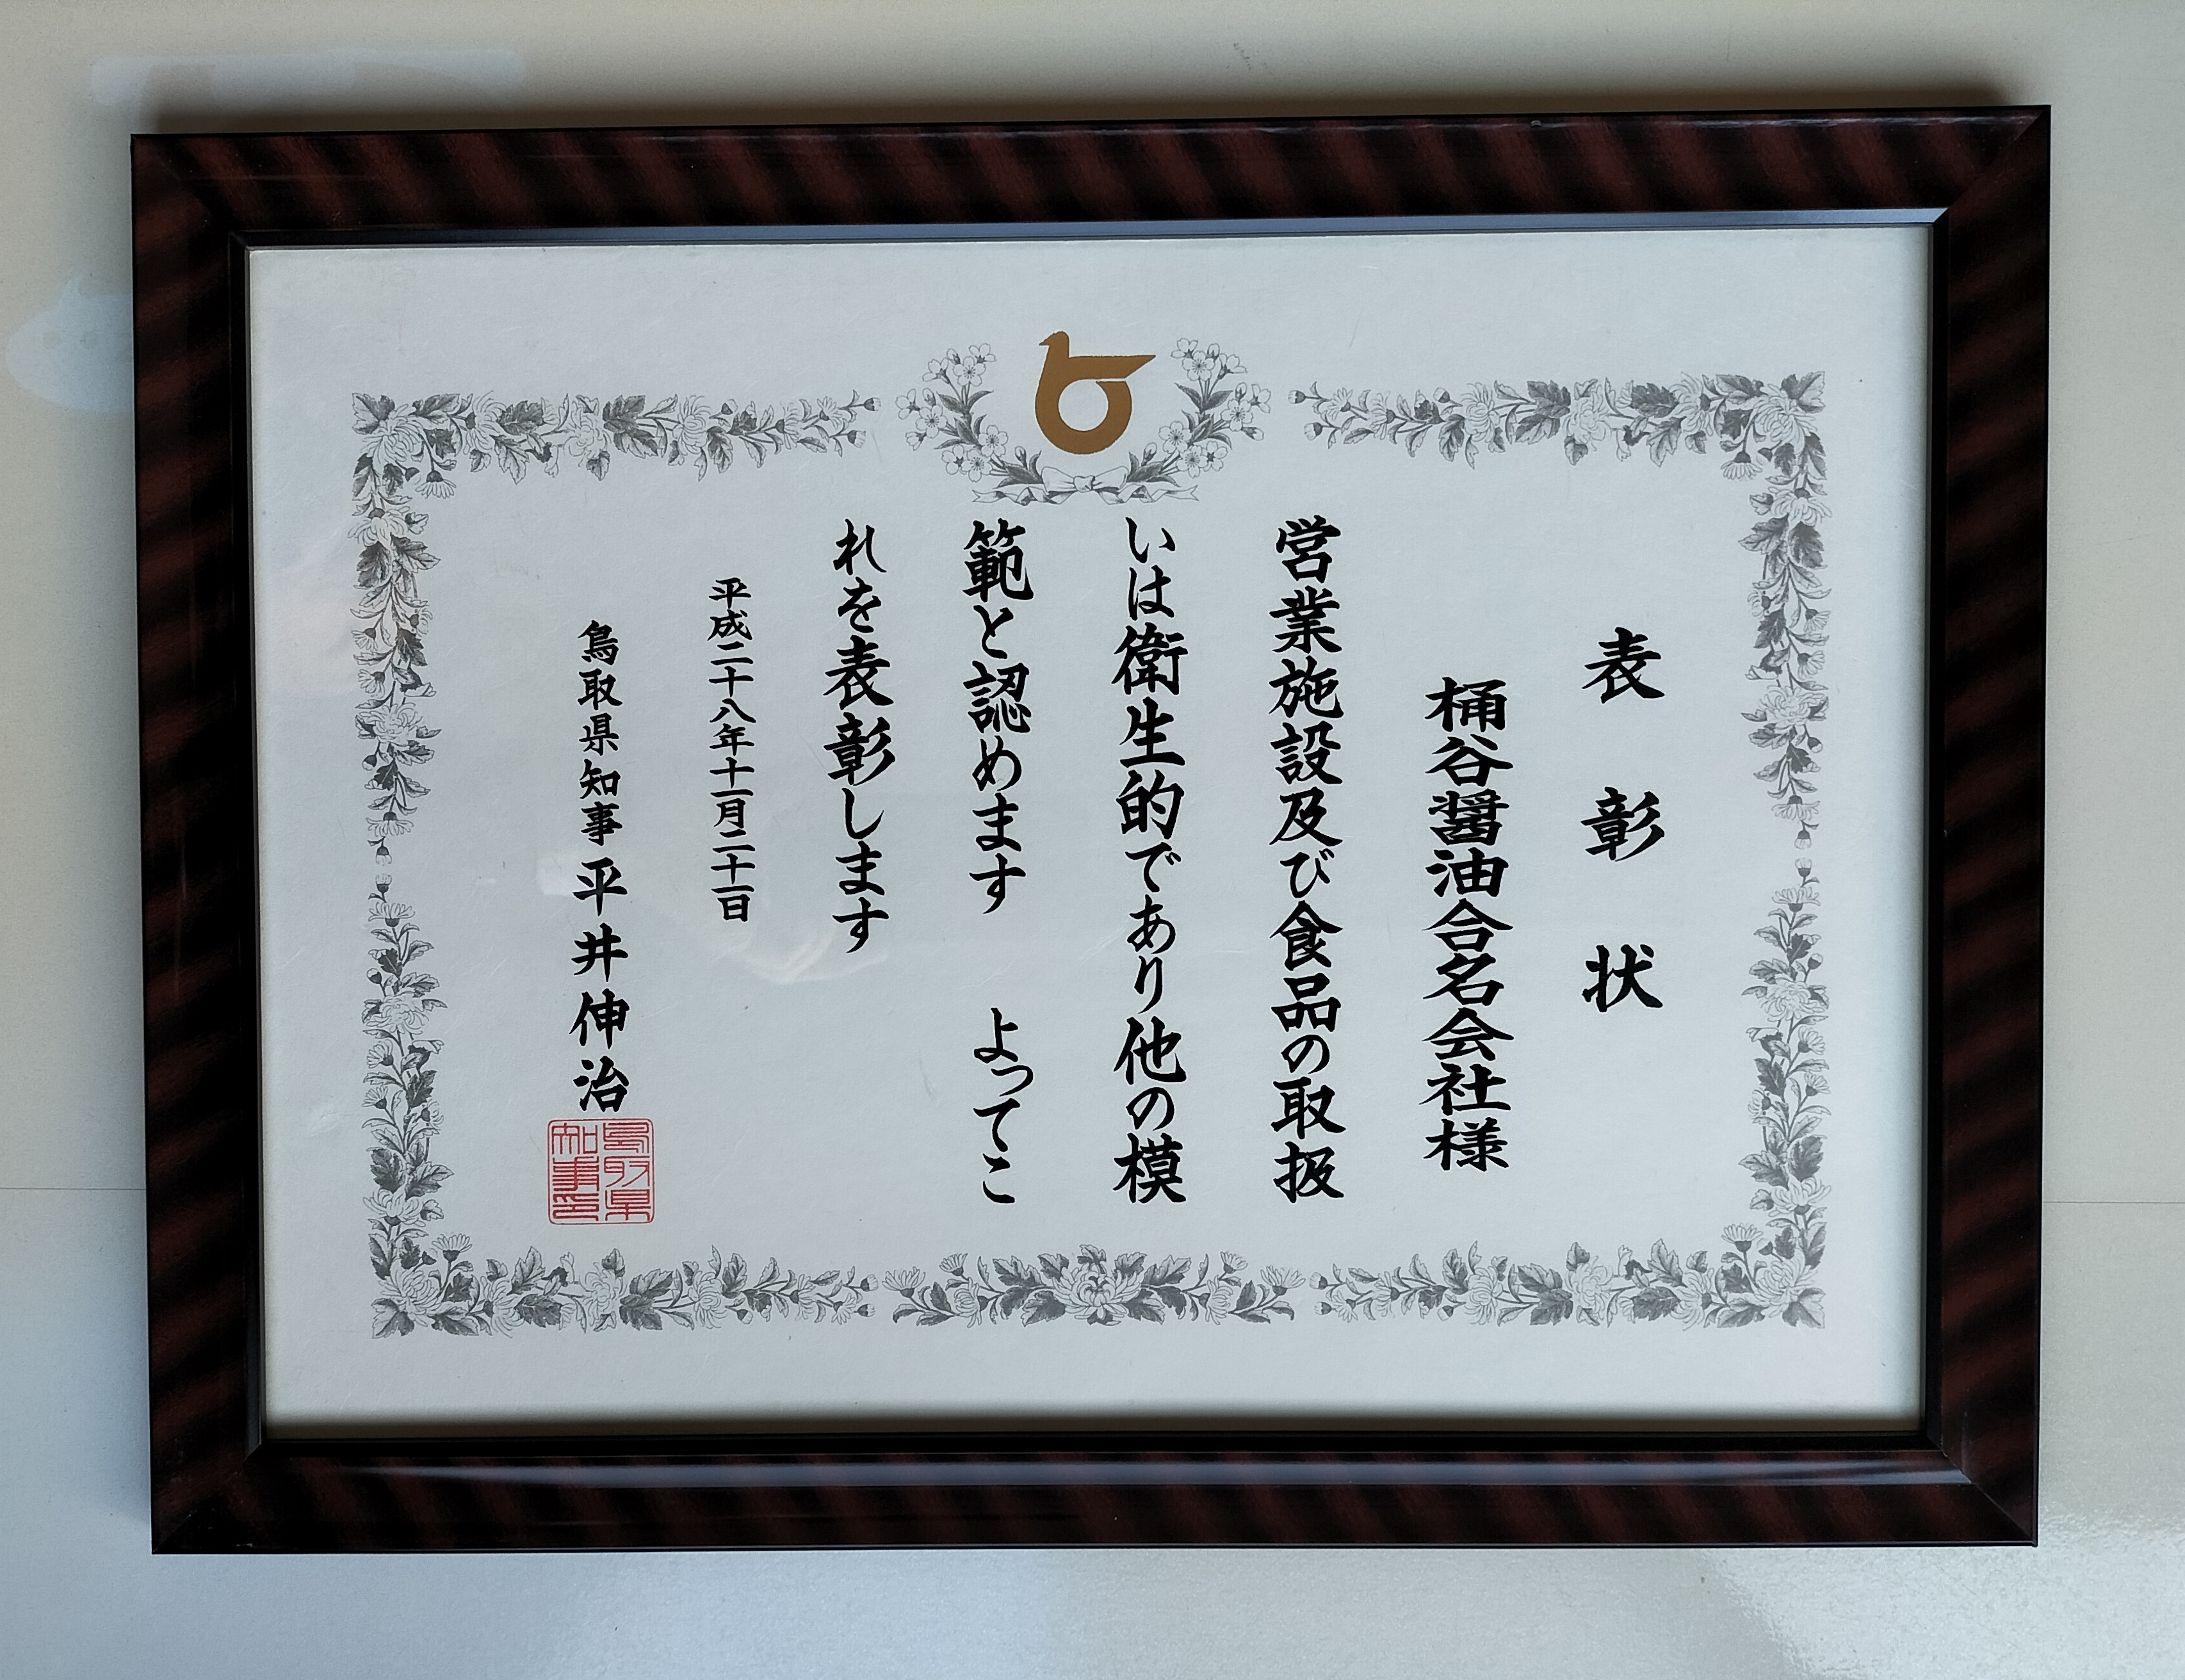 弊社の製造施設が「鳥取県知事賞」を受賞しました！